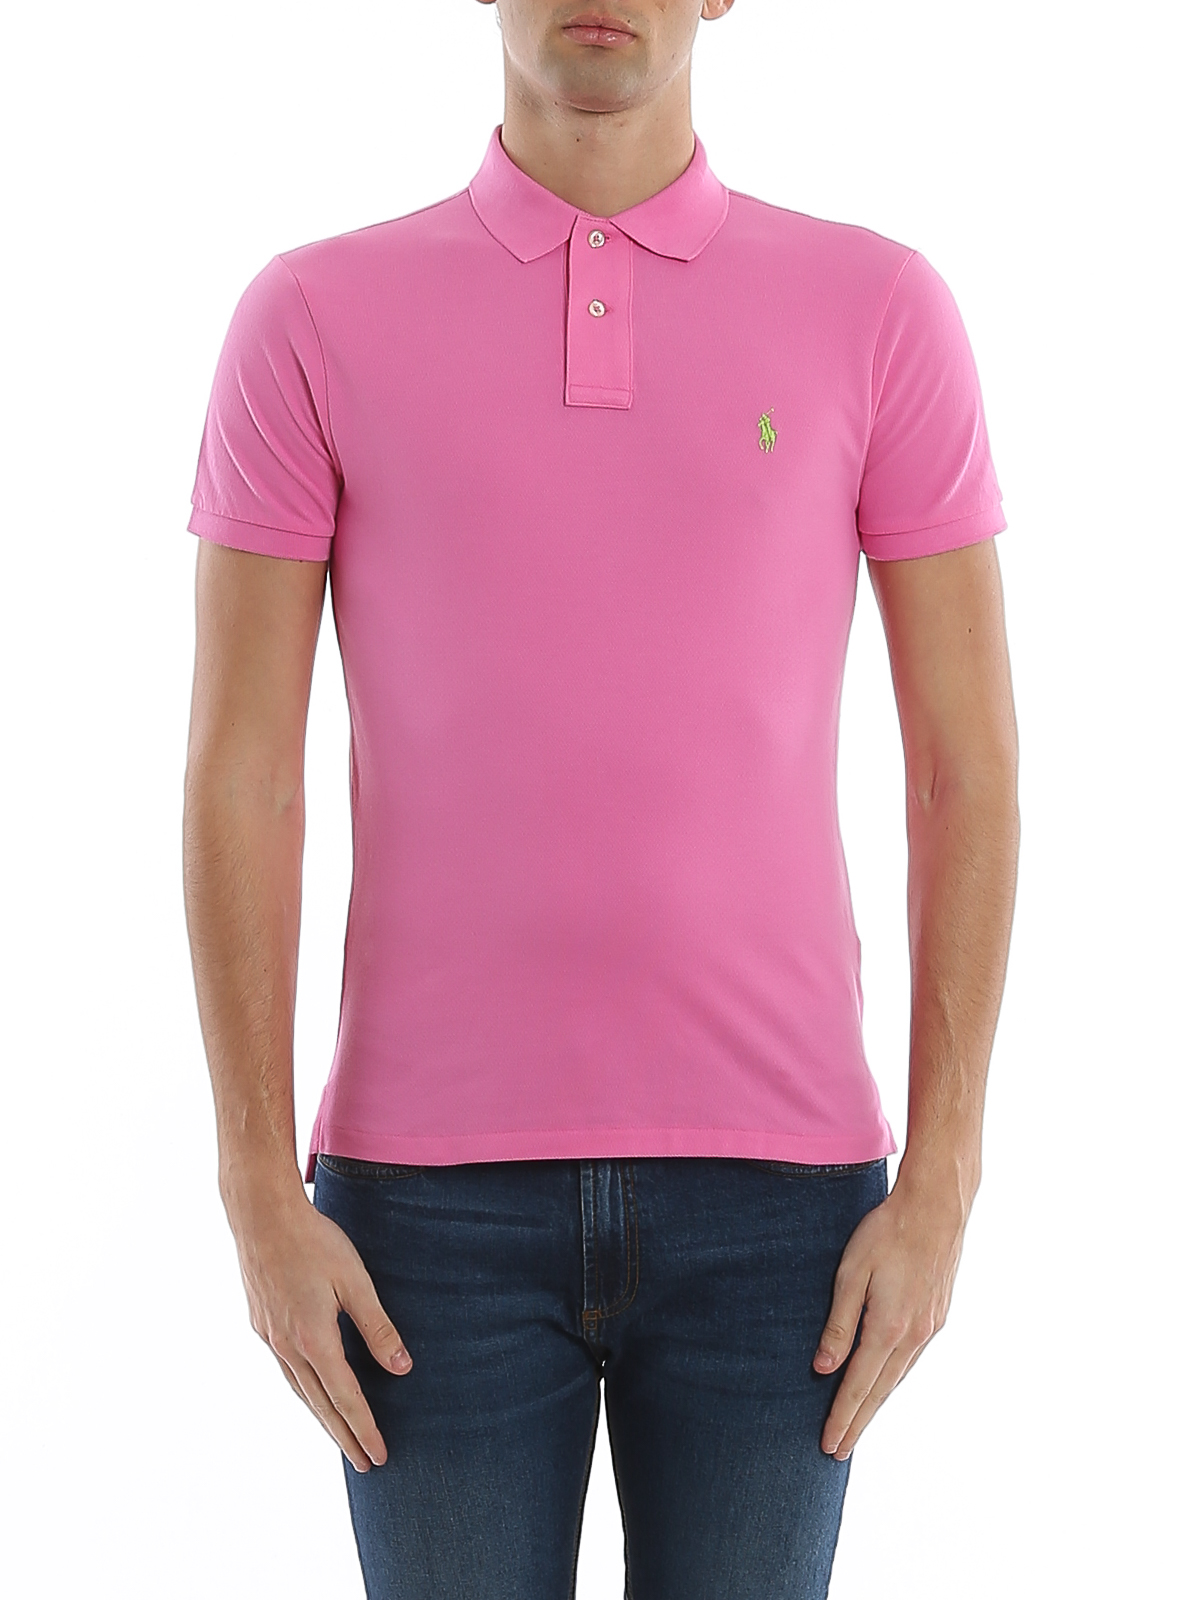 Polo shirts Polo Ralph Lauren - Logo embroidery pink pique polo shirt -  710795080032